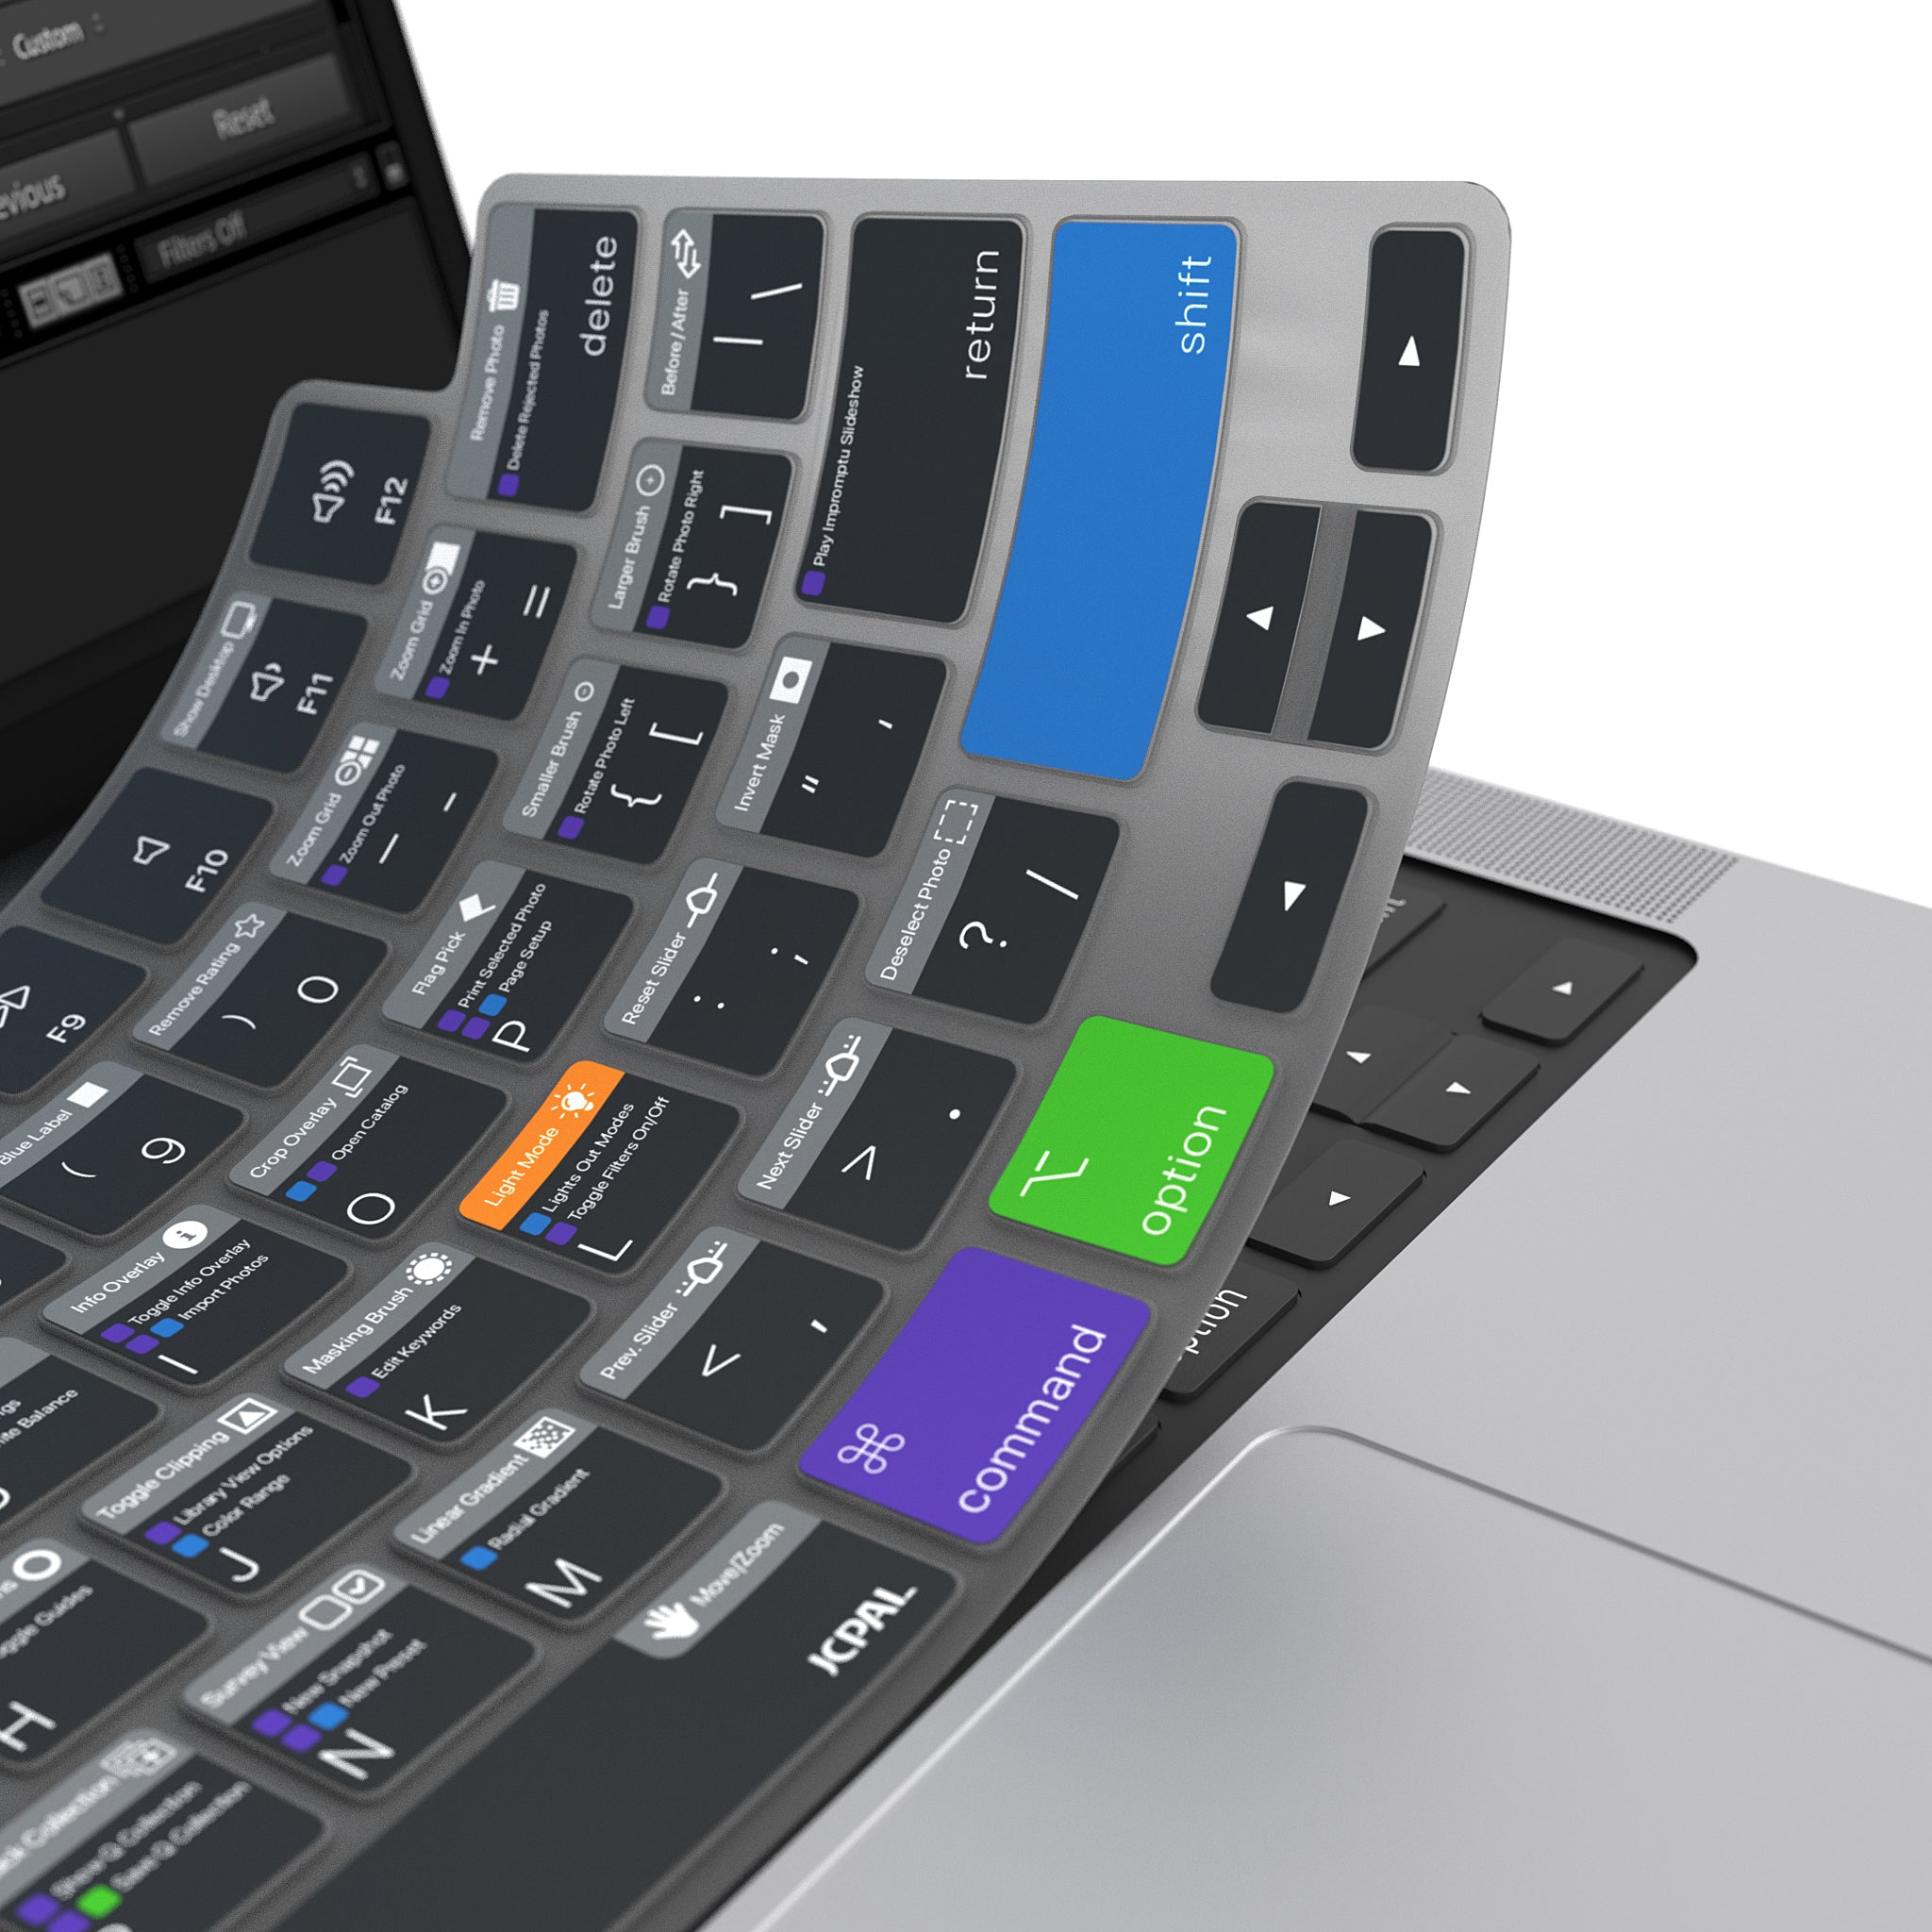 VerSkin   Adobe Lightroom Shortcut Keyboard Protector